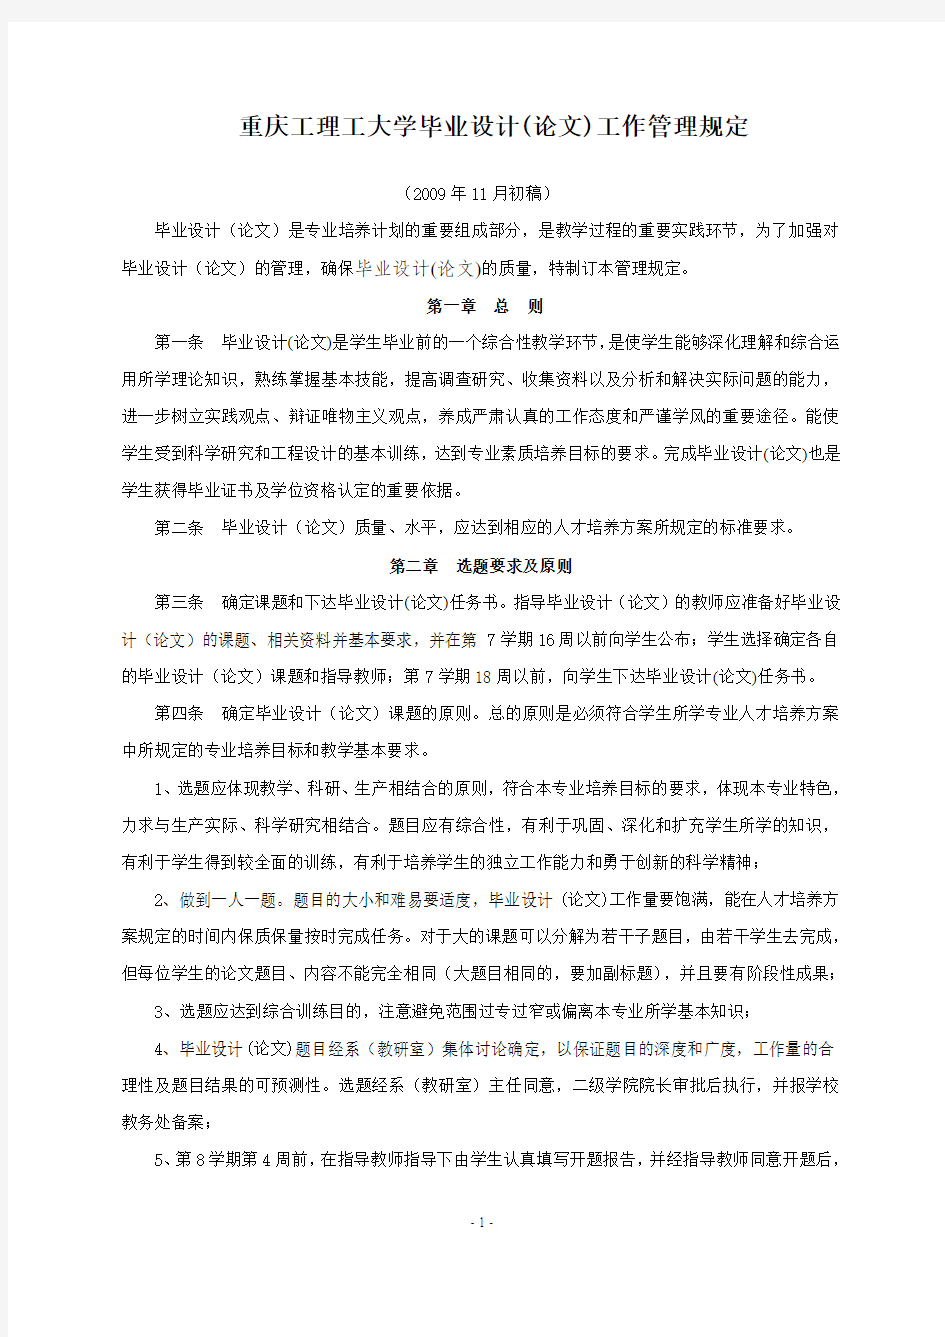 重庆工理工大学毕业设计(论文)管理规定征求意见稿